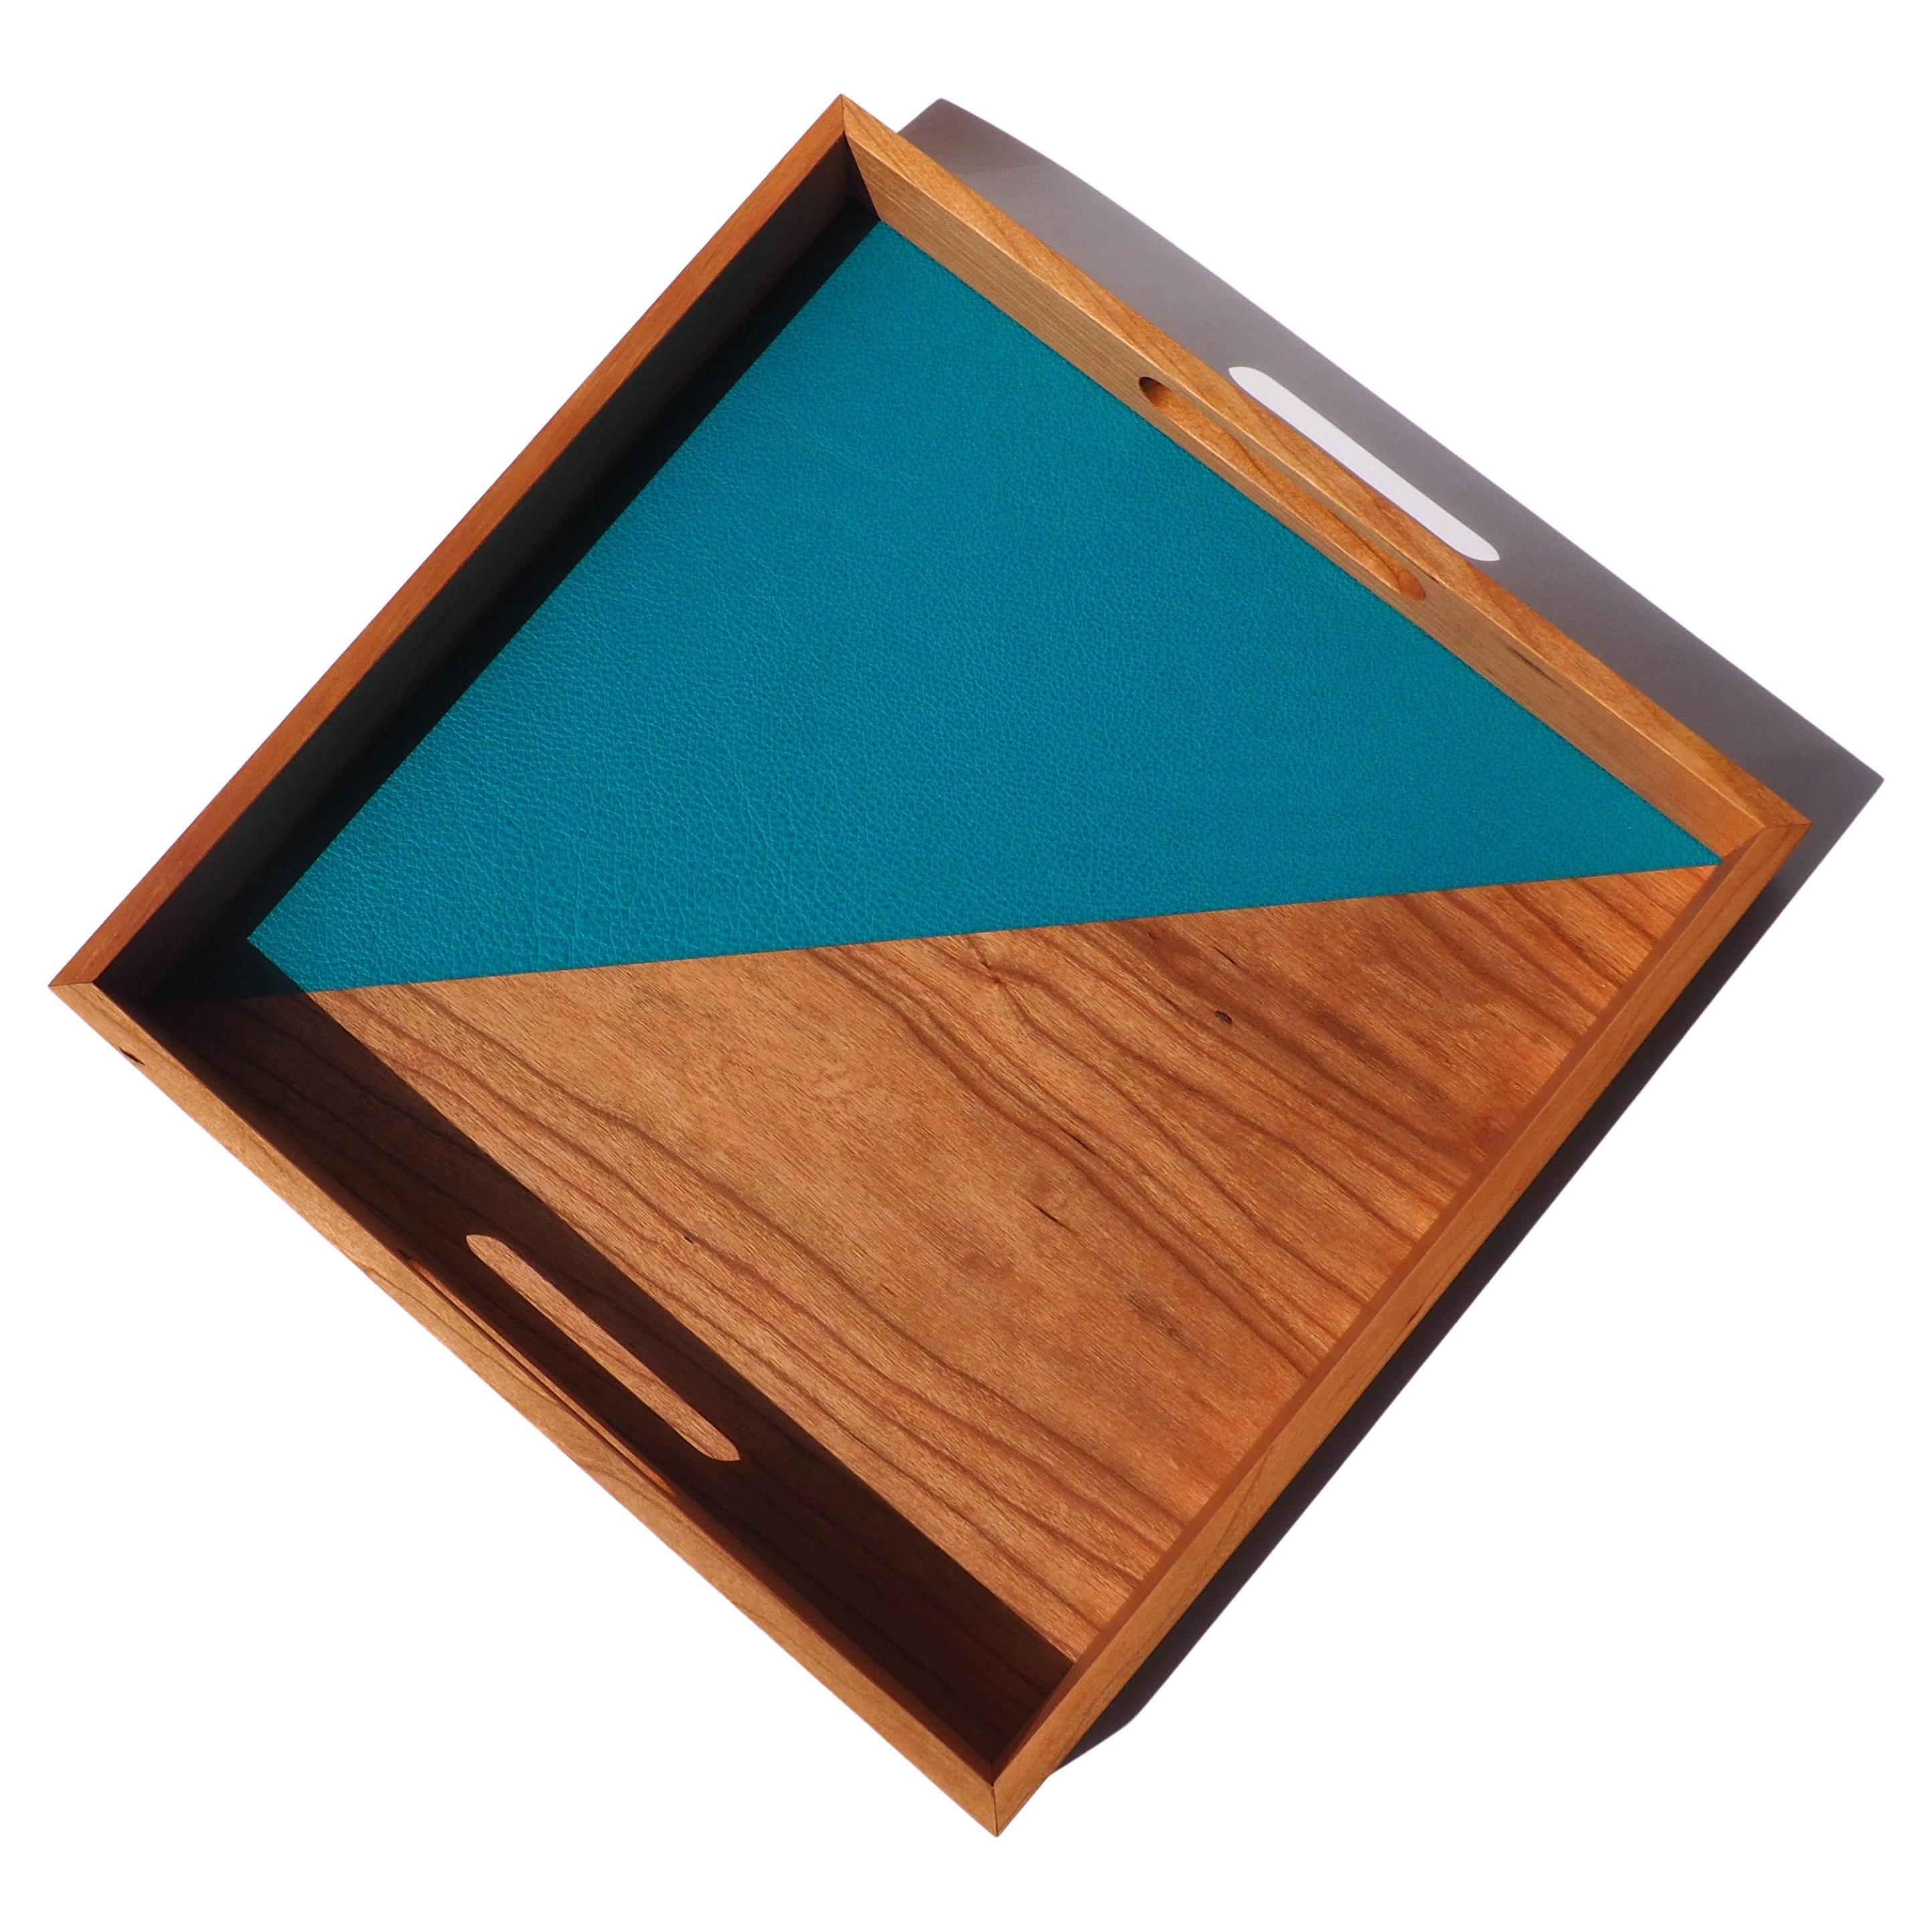 "After Hours" Zeitgenössisches quadratisches Tablett aus Holz und Leder von Atelier C.u.b.